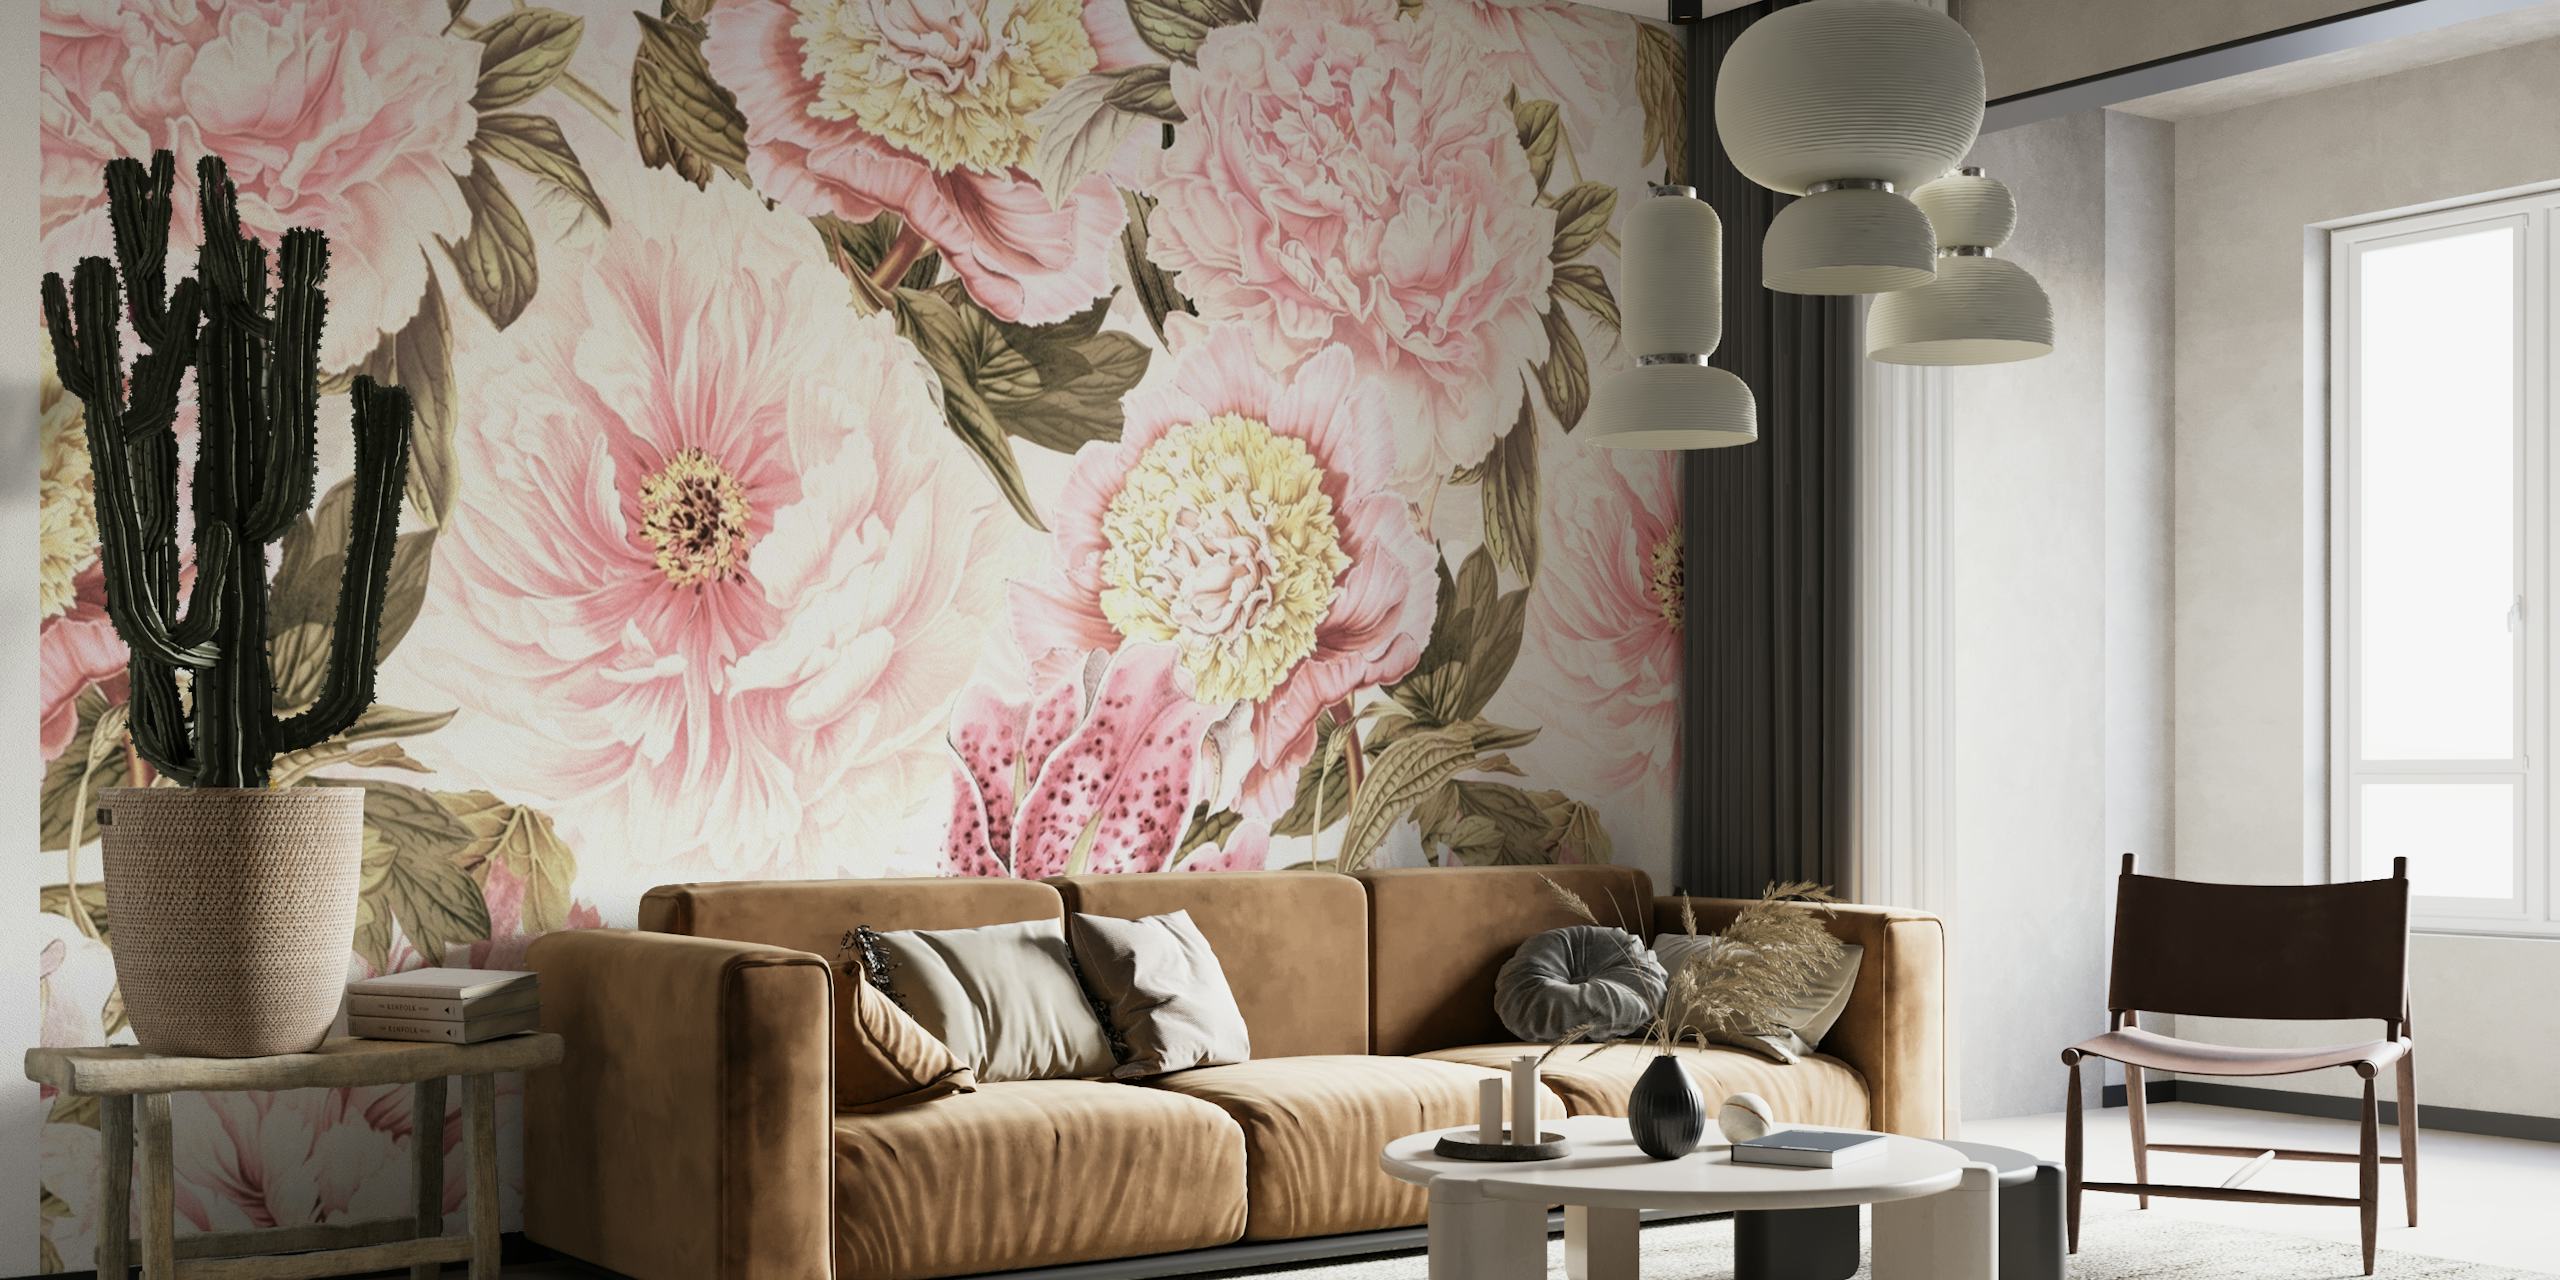 Vintage-inspireret vægmaleri med overdådige pæoner og liljer i barokstil med et pastelfarveskema.